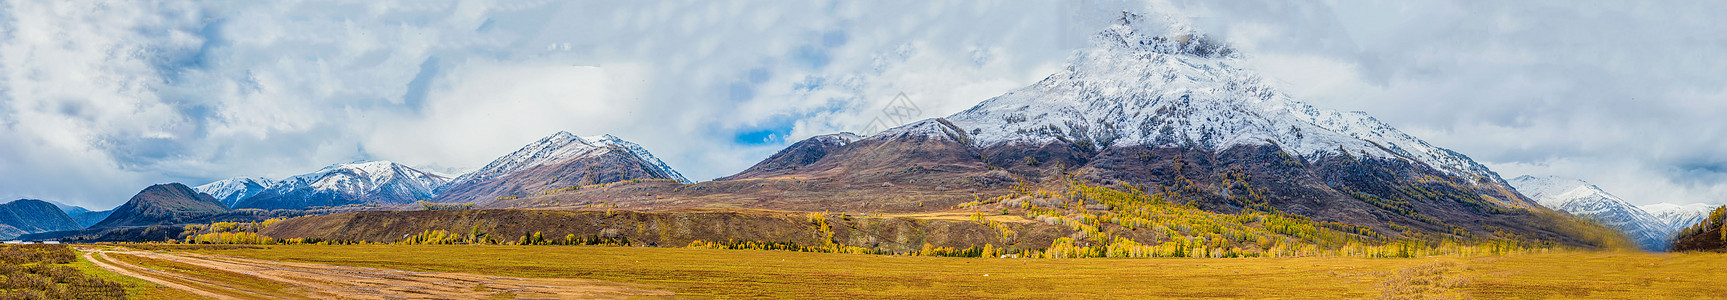 雪全景北疆秋色雪山全景背景